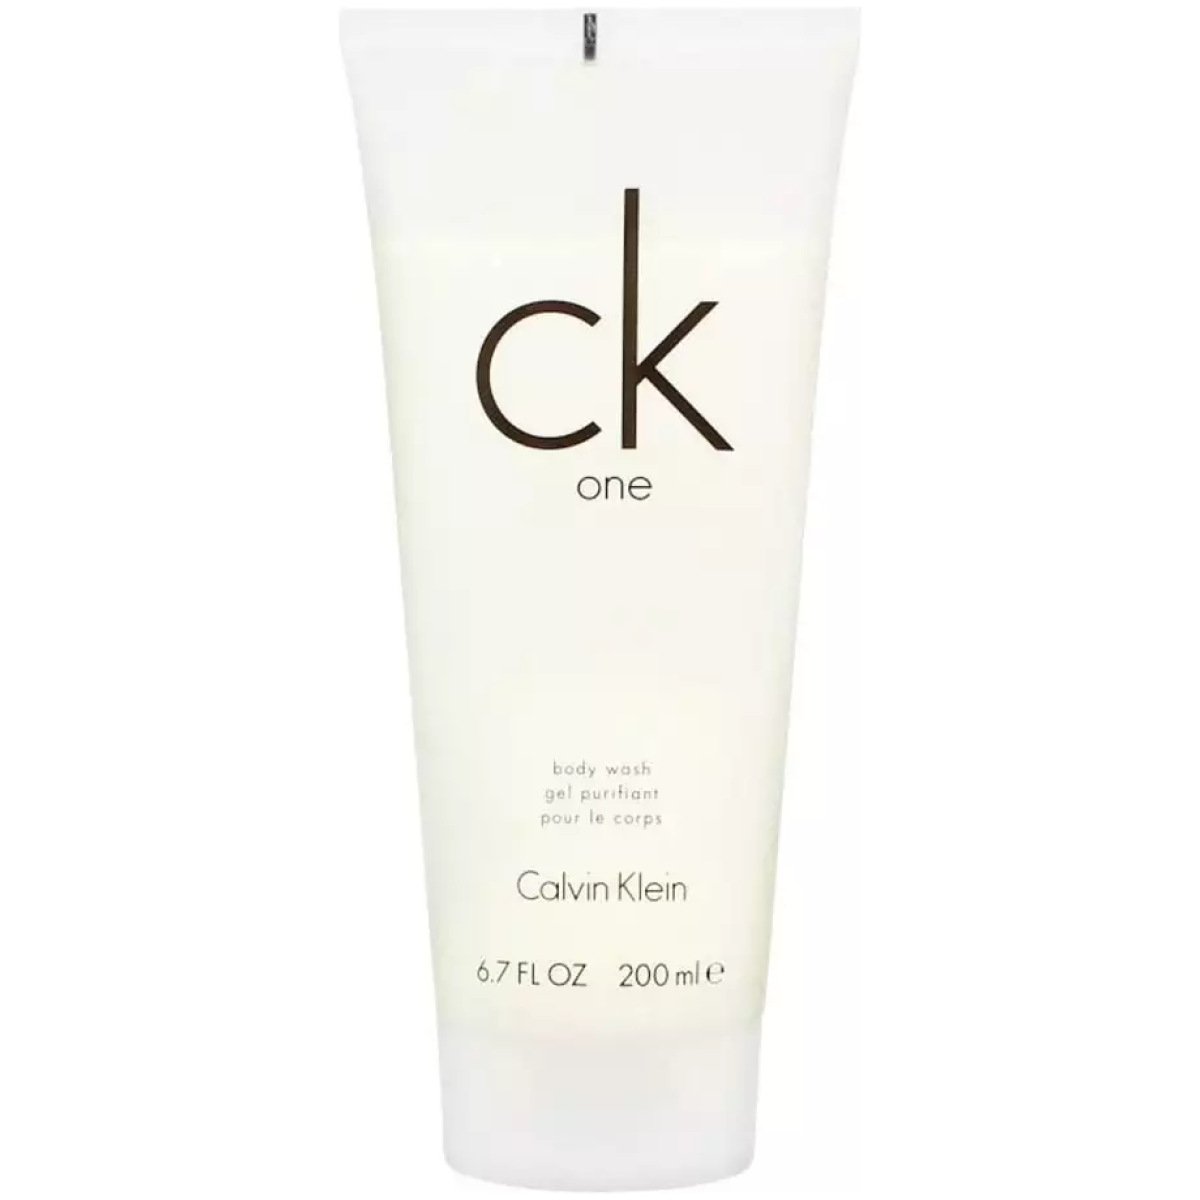 Calvin Klein Ck One Body Wash 200ml